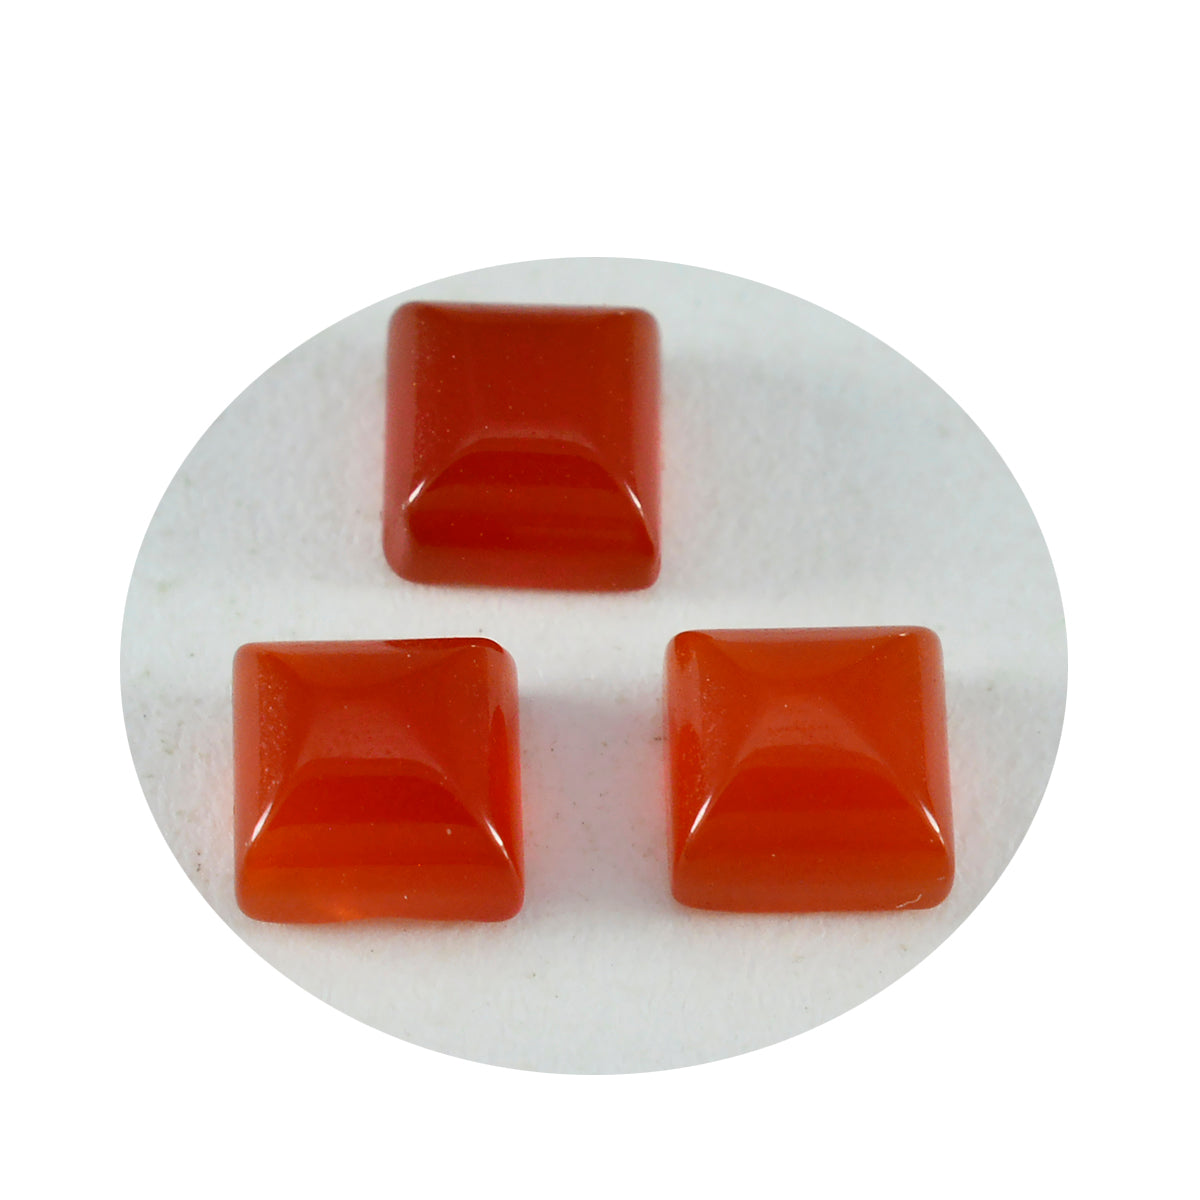 Riyogems 1PC rode onyx cabochon 9x9 mm vierkante vorm goede kwaliteit losse edelsteen